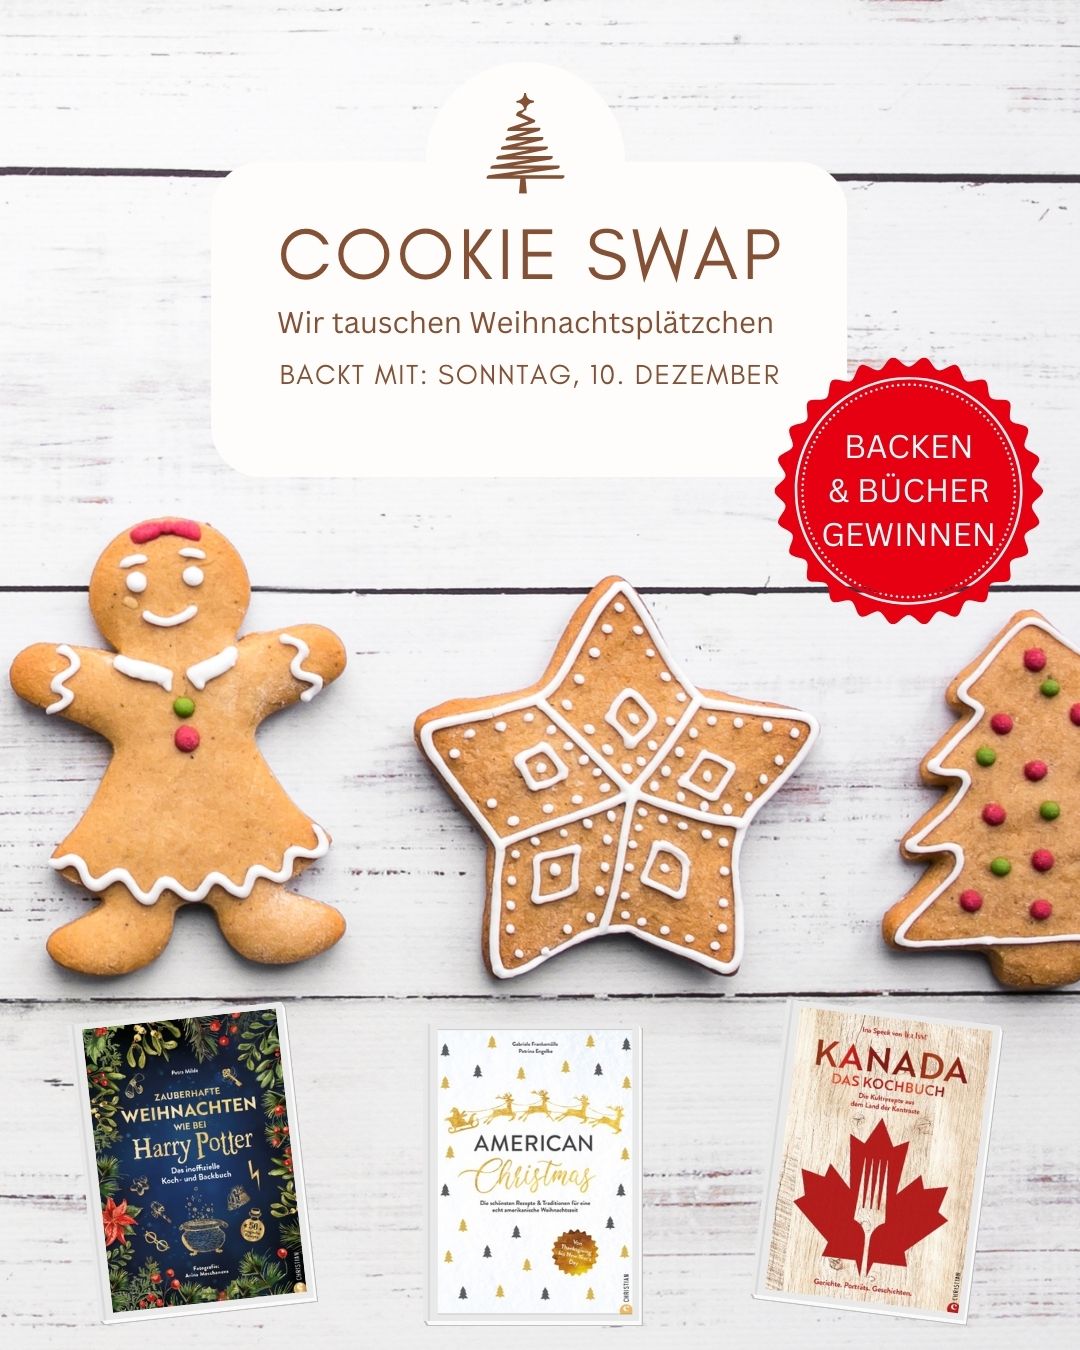 Cookie Swap / Weihnachtsplätzchentausch